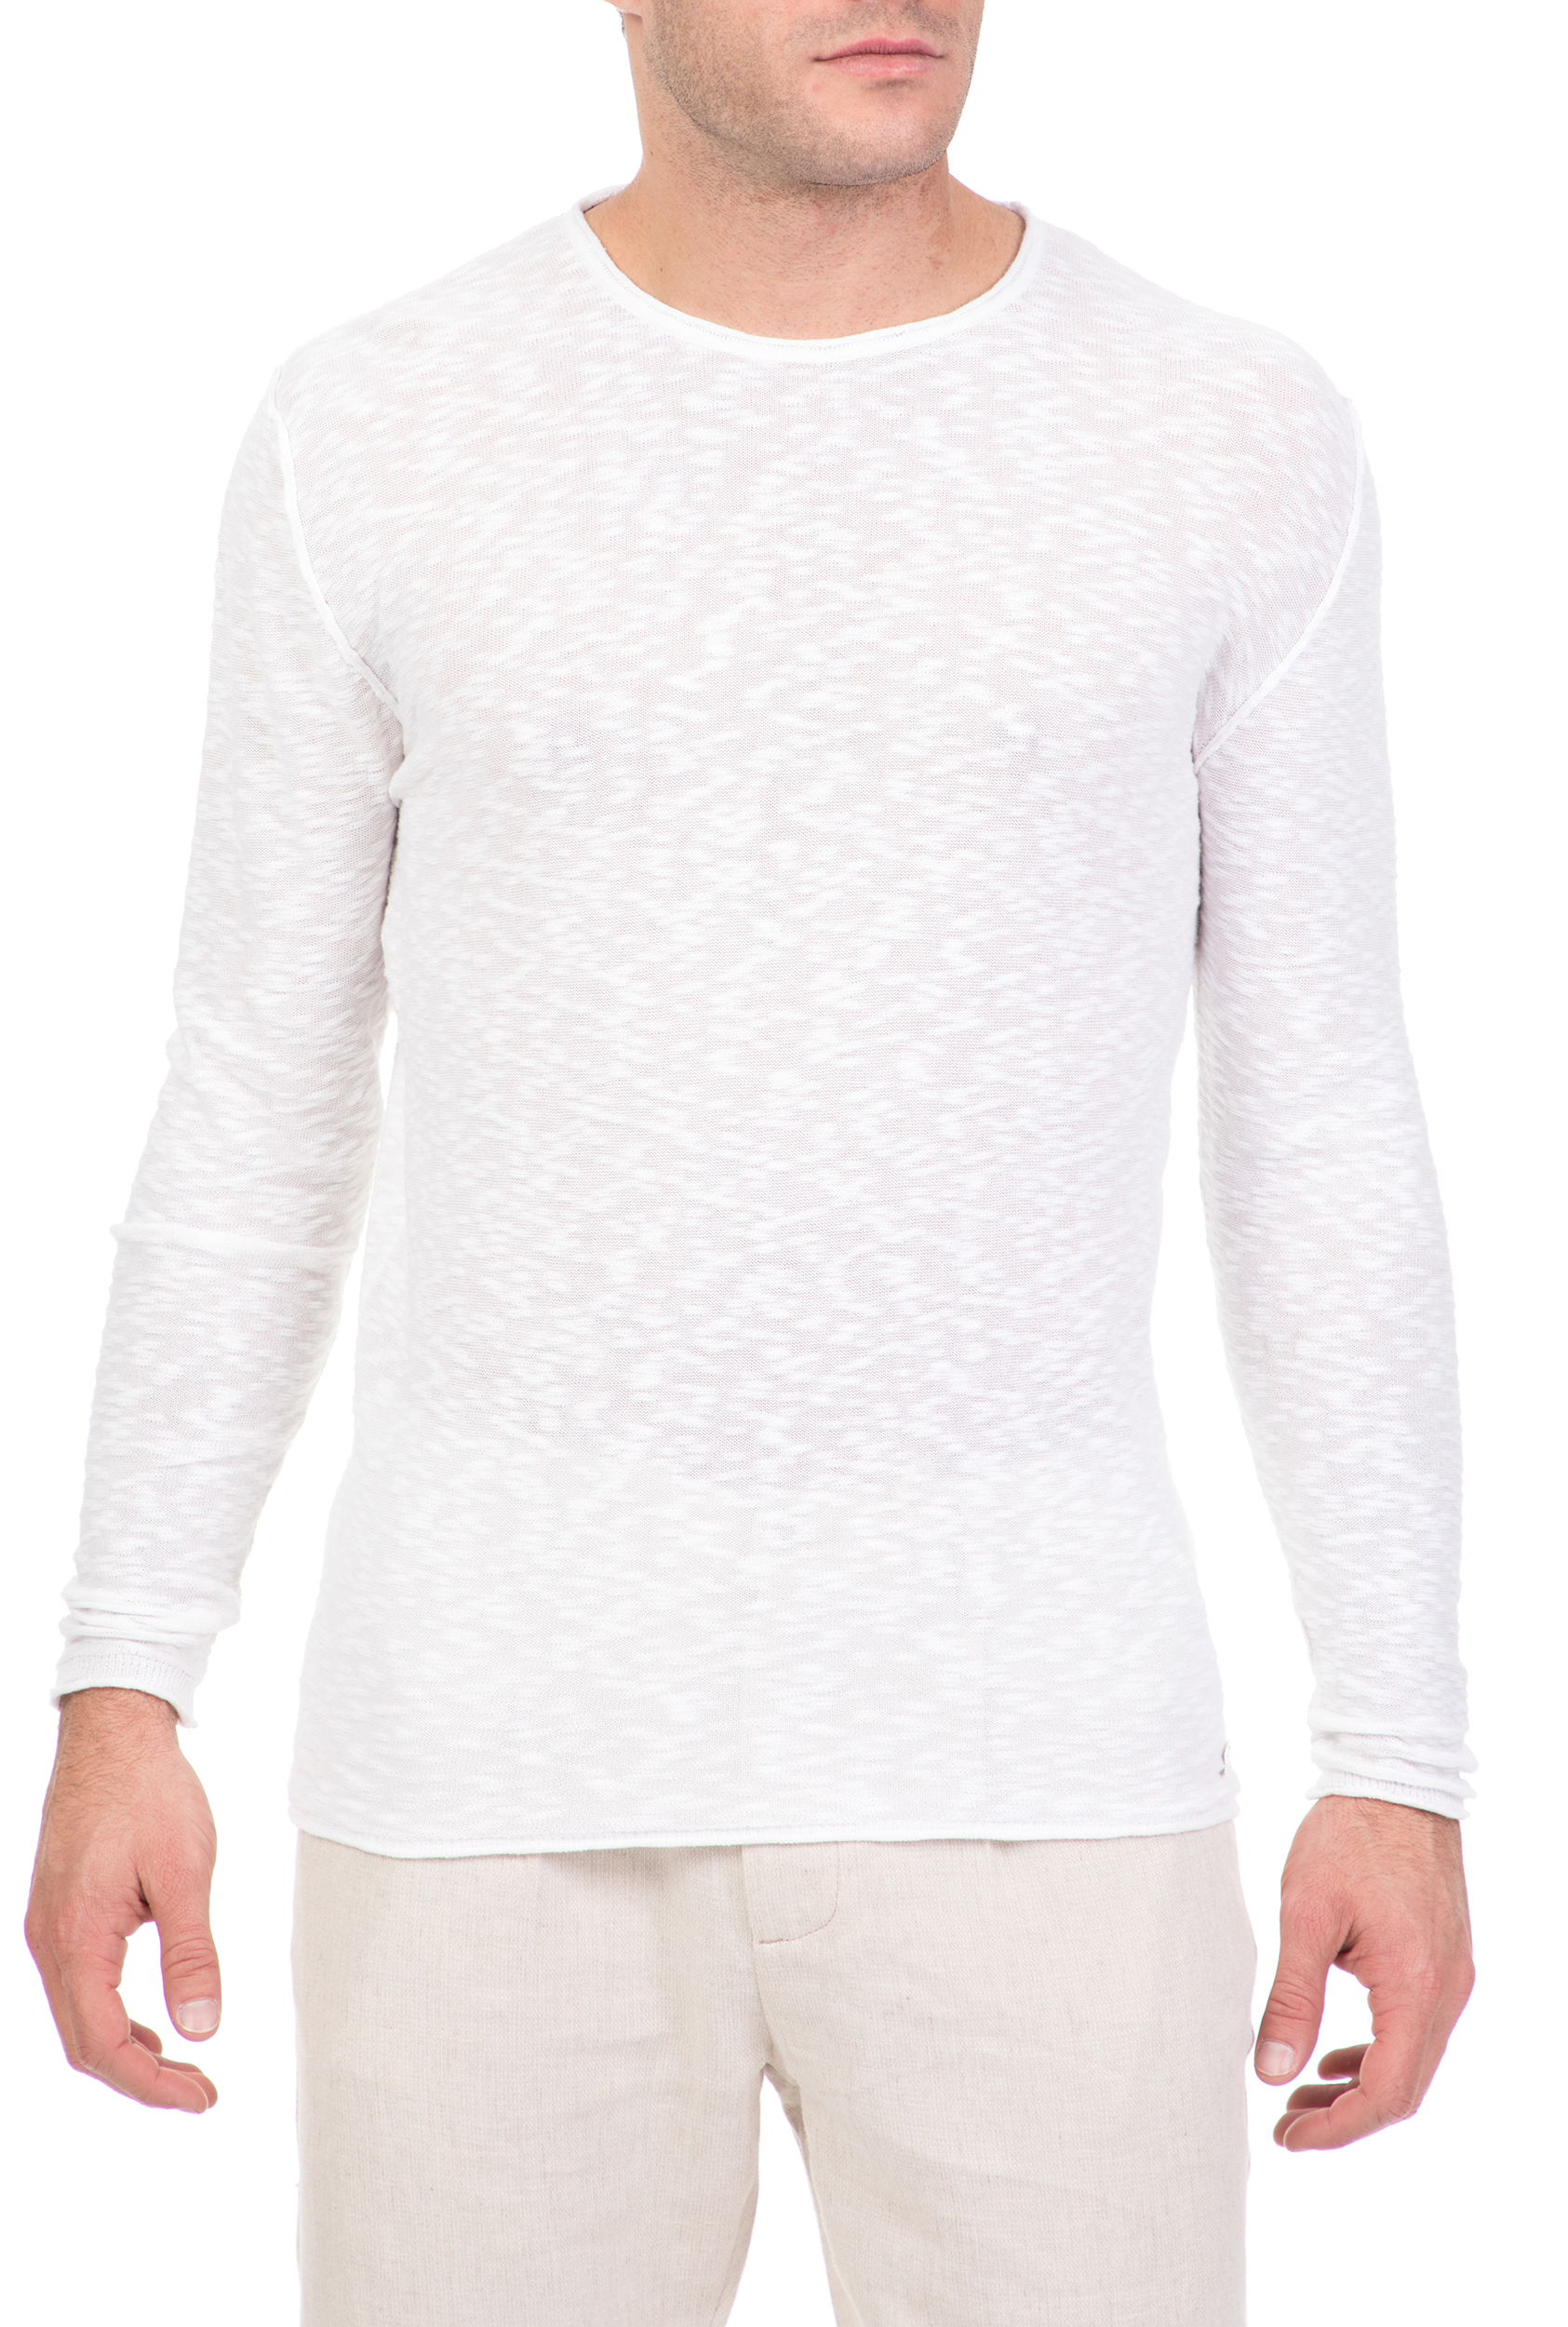 Ανδρικά/Ρούχα/Πλεκτά-Ζακέτες/Πουλόβερ SSEINSE - Ανδρική μακρυμάνικη μπλούζα SSEINSE λευκή